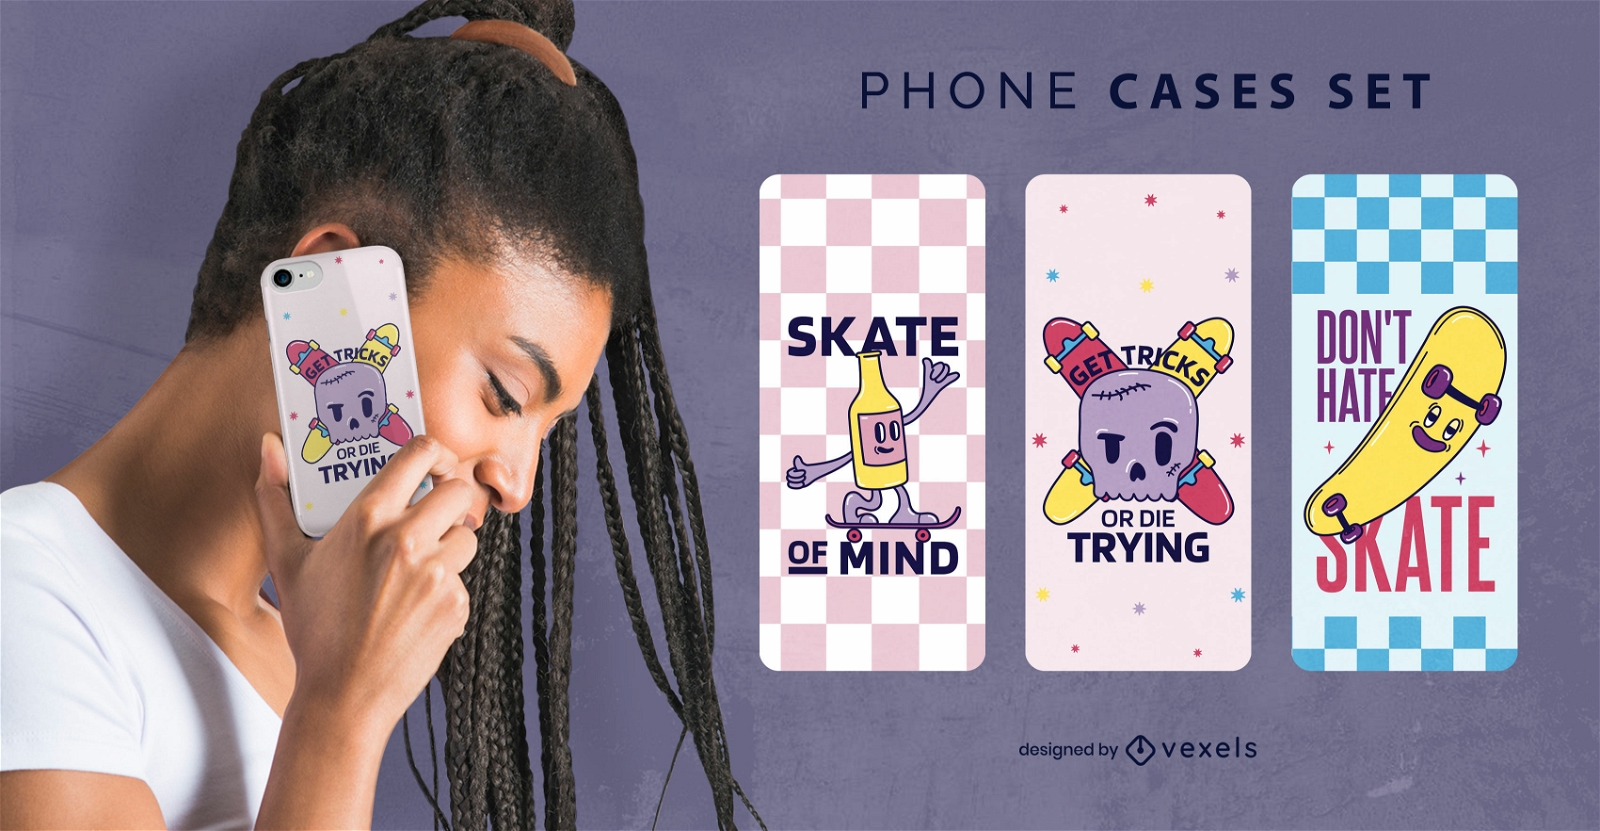 Skateboarding-Cartoon-Telefonkasten-Set